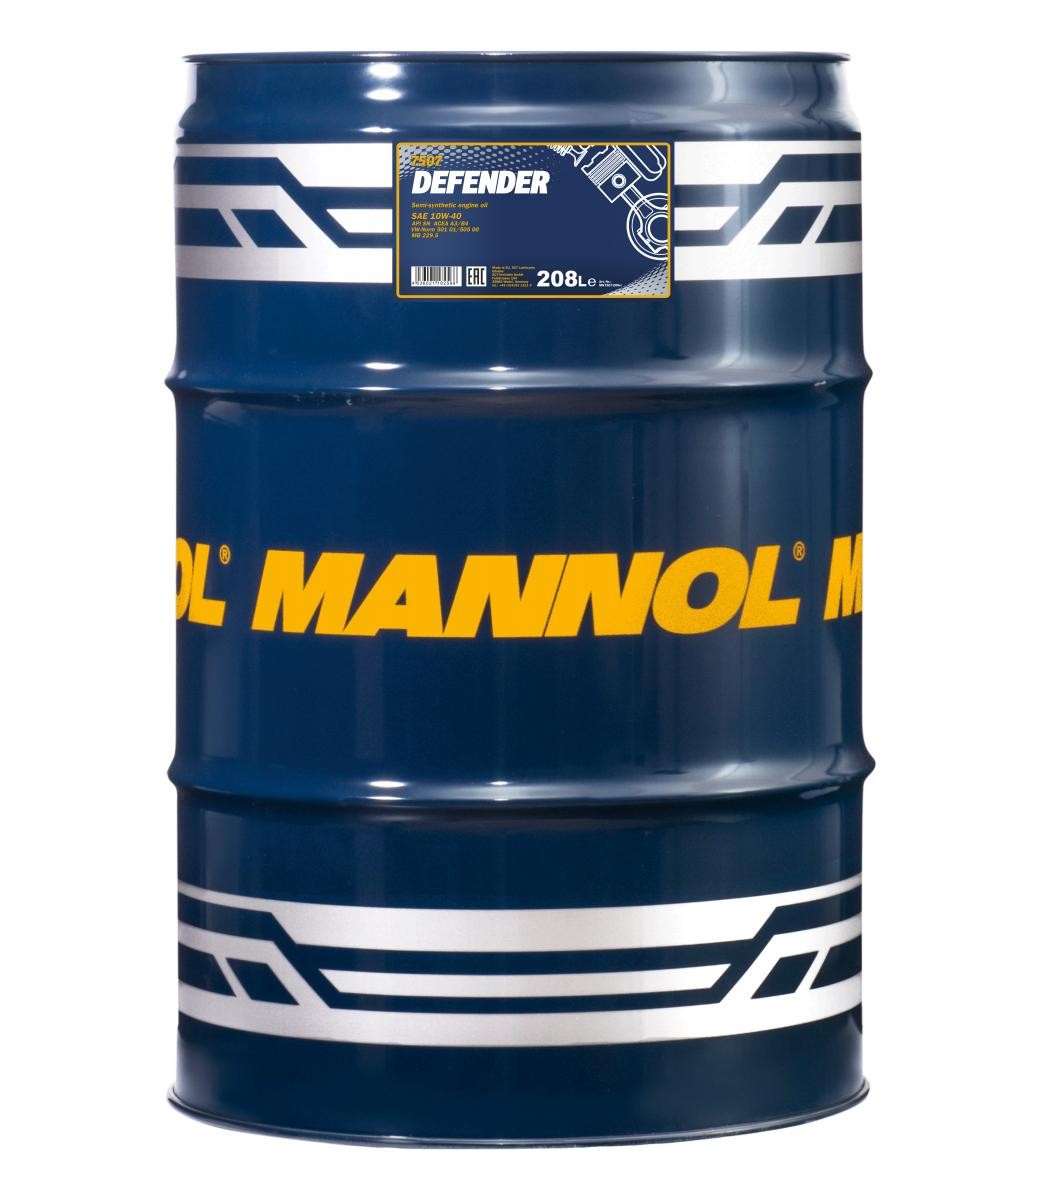 10W-40 Mannol 7507 Defender Motoröl 208 Liter